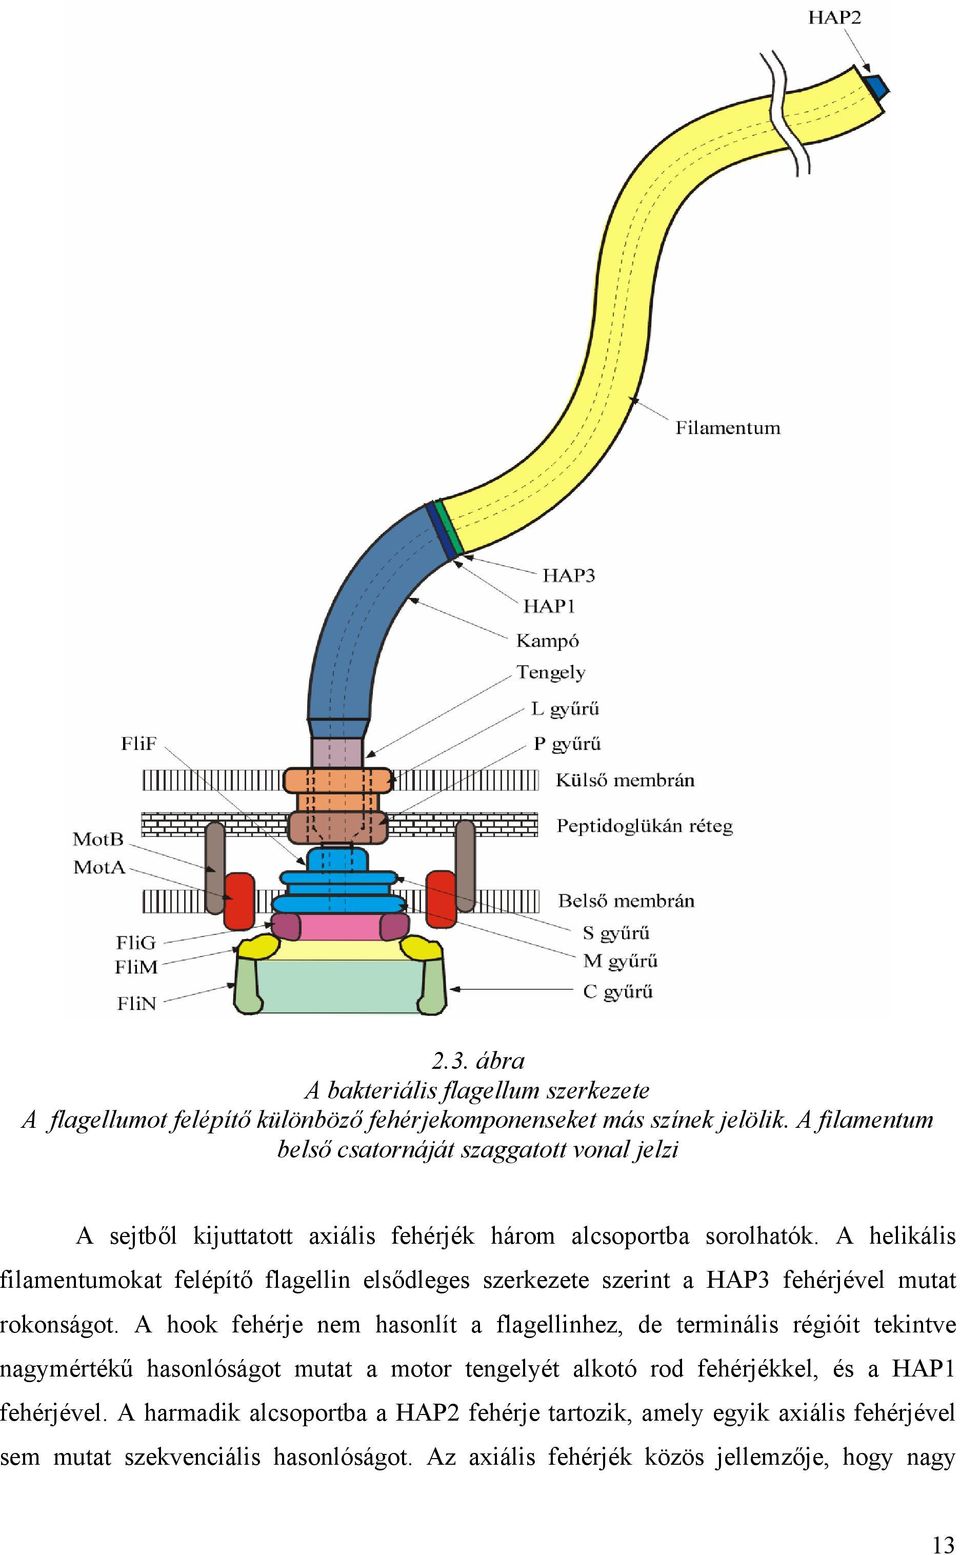 A helikális filamentumokat felépítő flagellin elsődleges szerkezete szerint a HAP3 fehérjével mutat rokonságot.